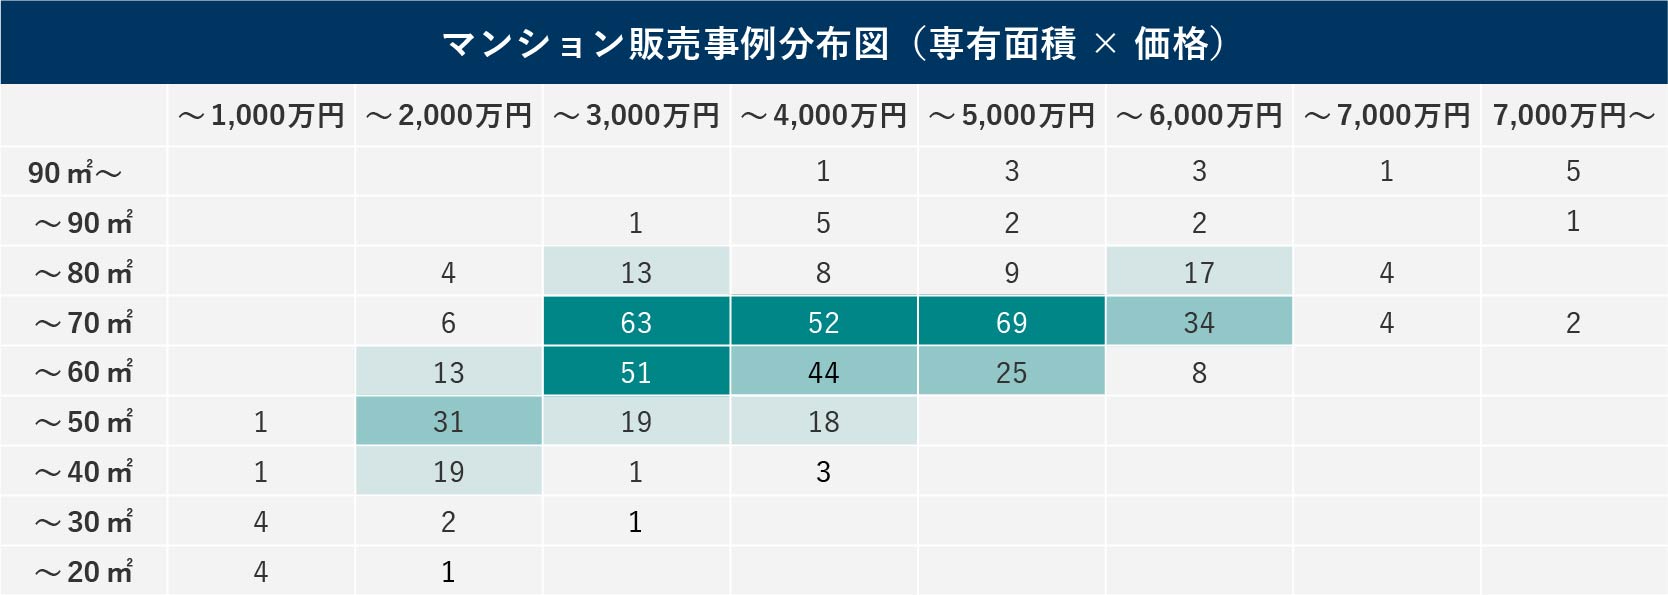 西東京市のマンションに関する売却価格分布図（専有面積×価格）